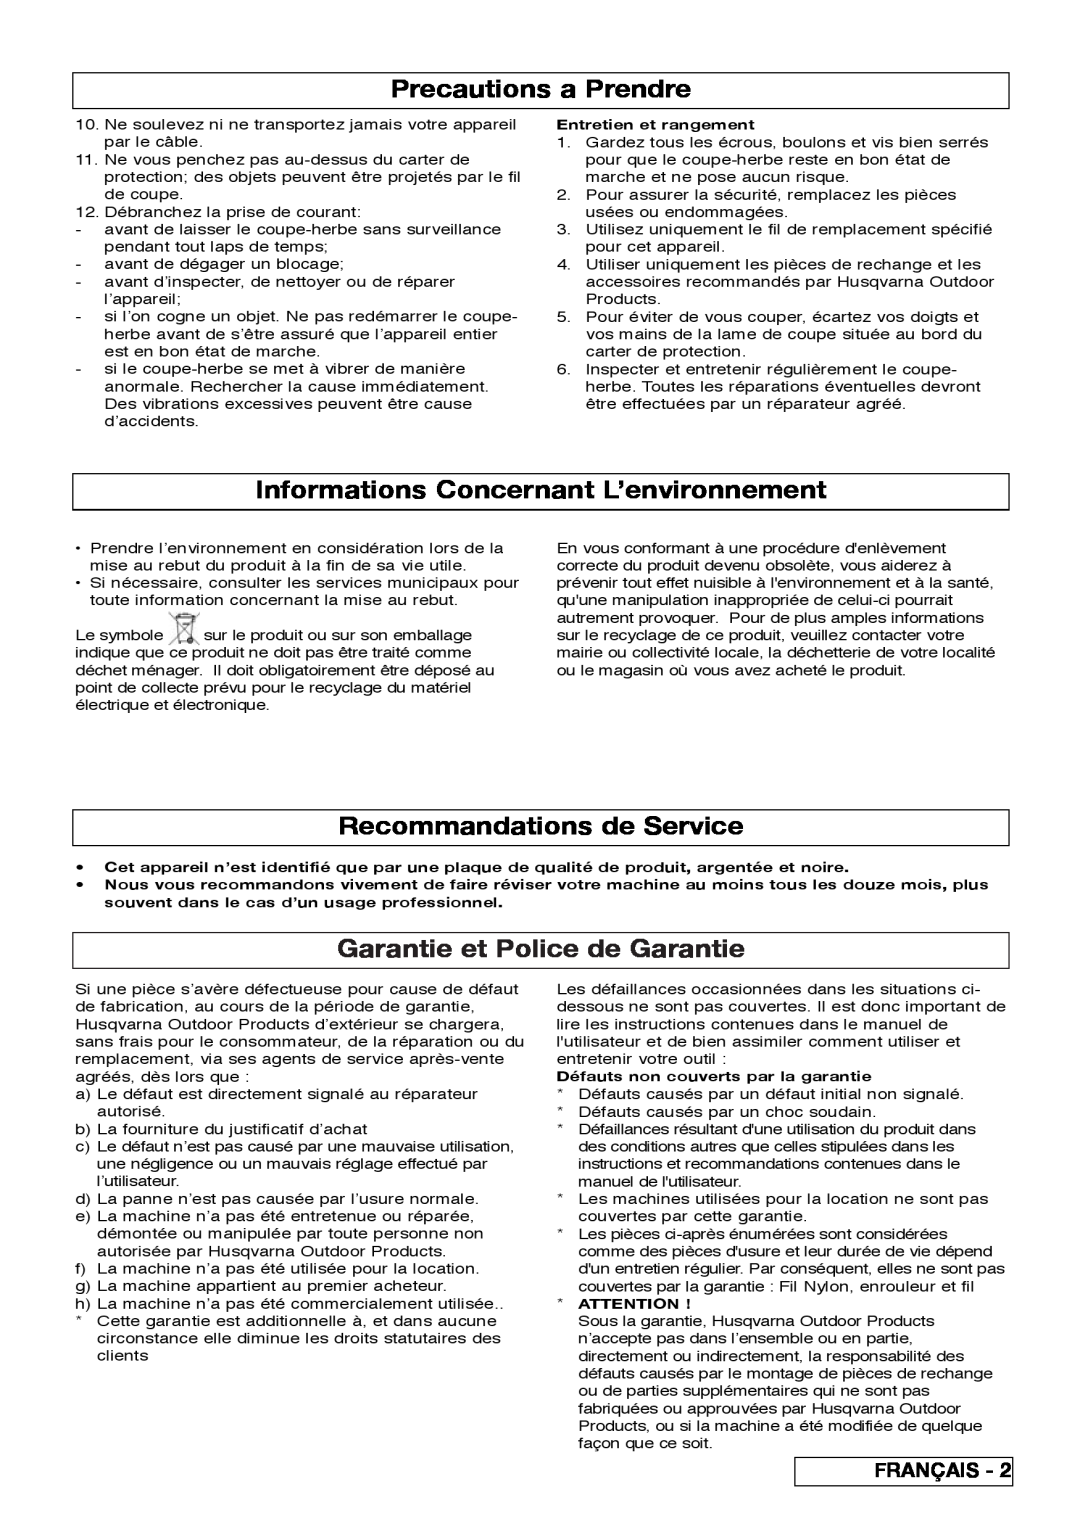 Flymo 800/1000 manual Precautions a Prendre, Informations Concernant L’environnement, Recommandations de Service, Français 